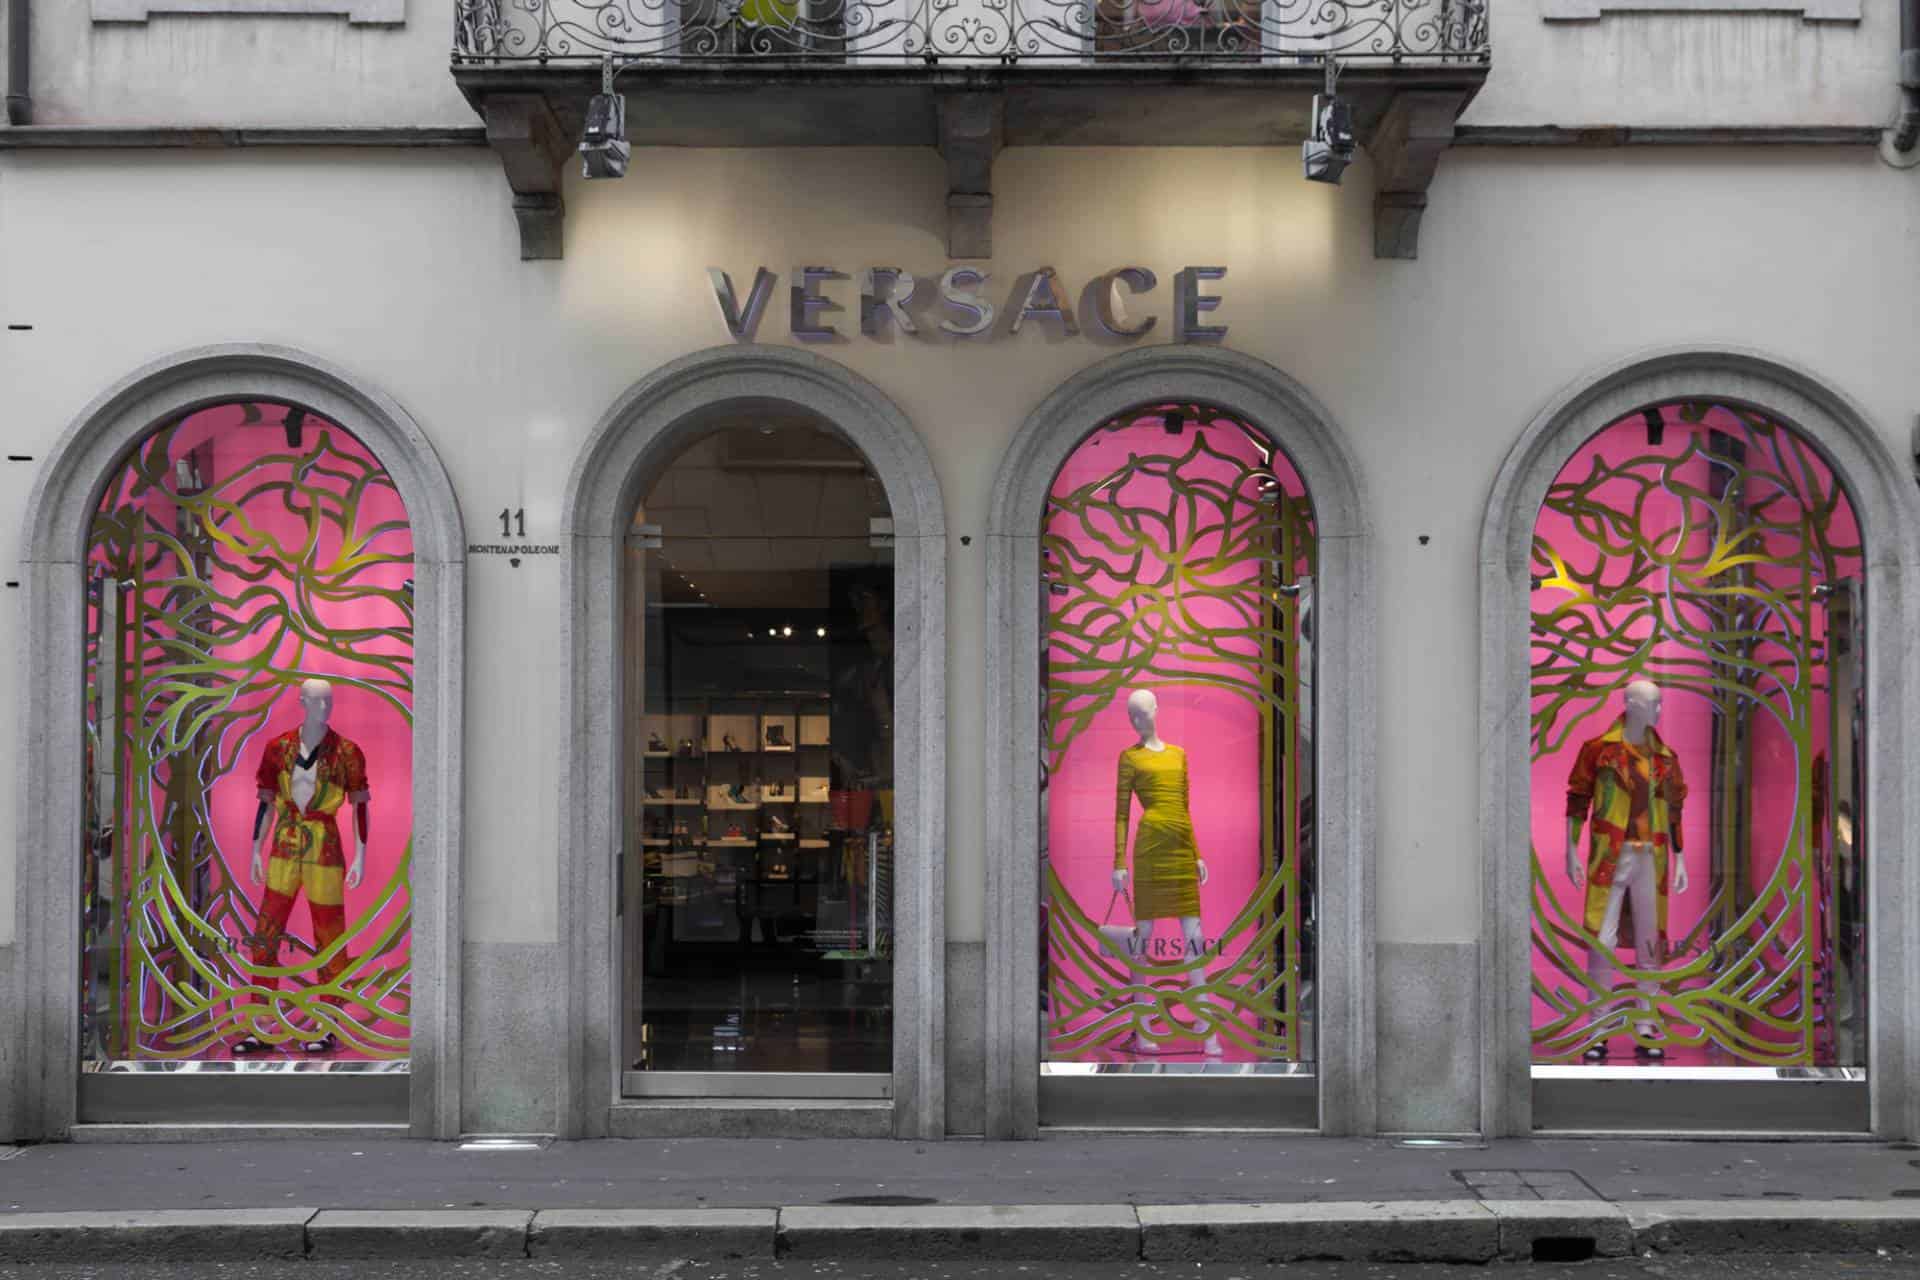 Facade of a Versace store in Milan, Italy.